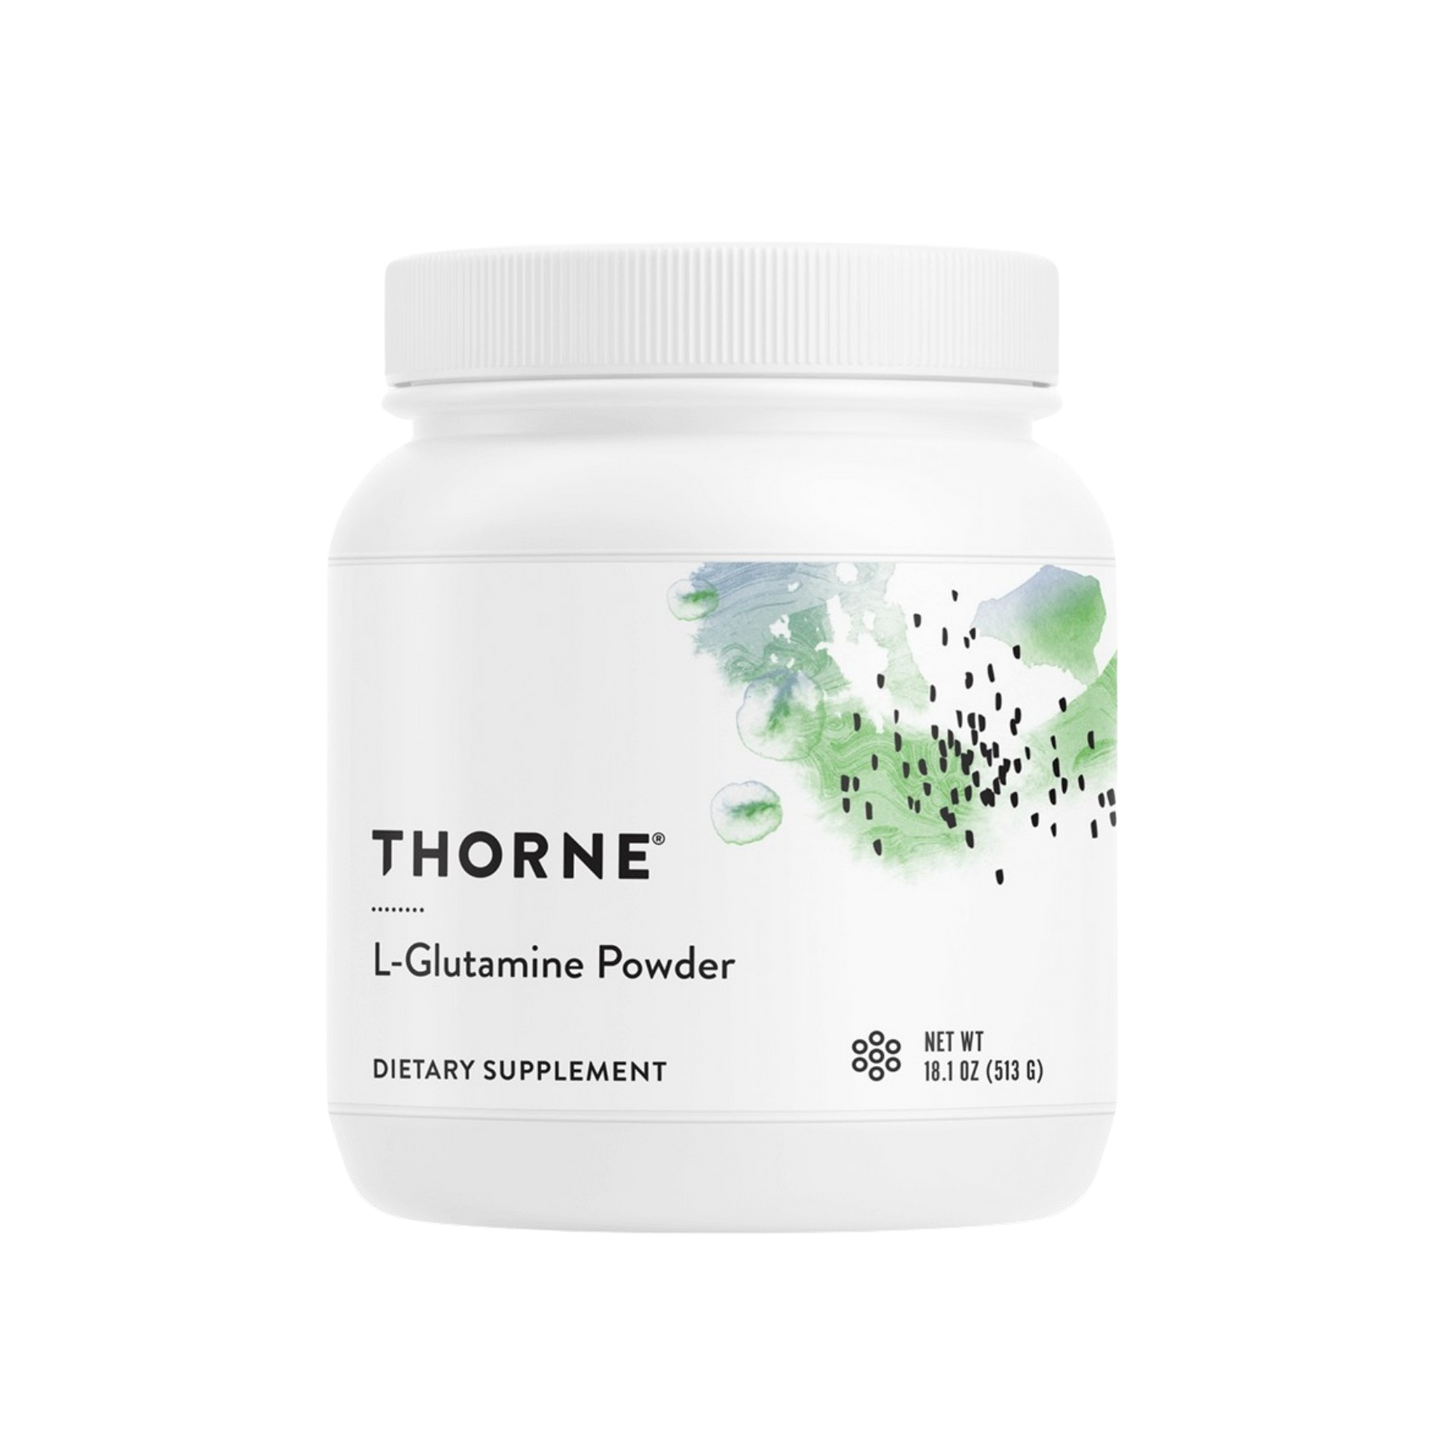 Thorne L-Glutamine Powder